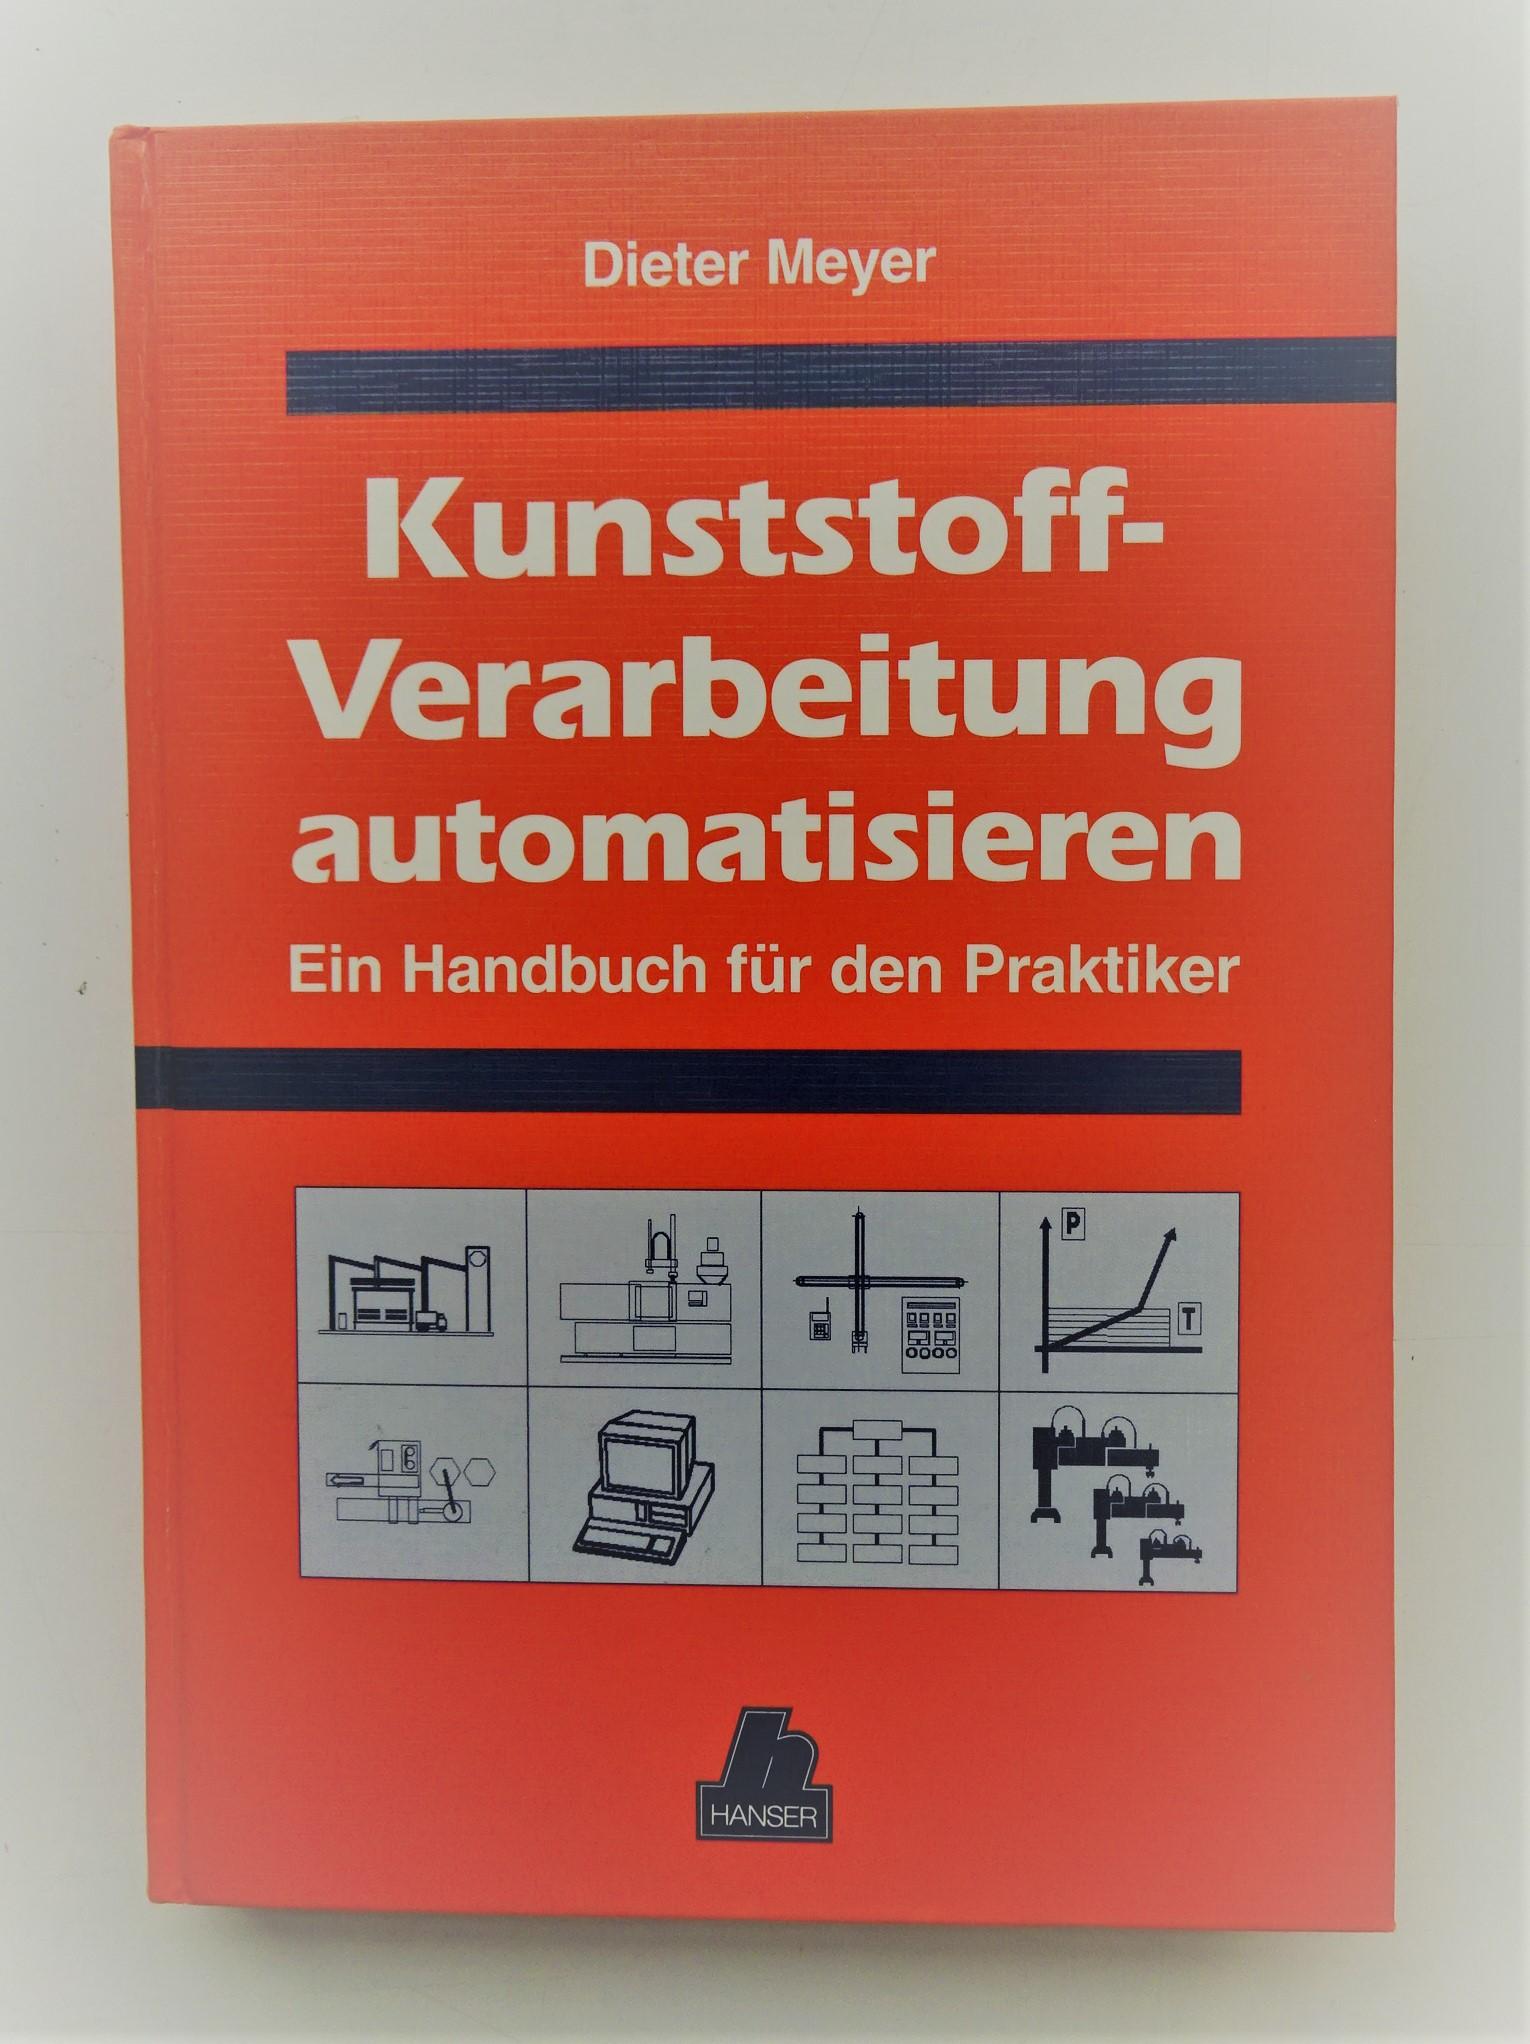 Kunststoffverarbeitung automatisieren. Ein Handbuch für den Praktiker. Mit Diskette. Mit 166 Bildern u. 16 Tabellen - Meyer, Dieter